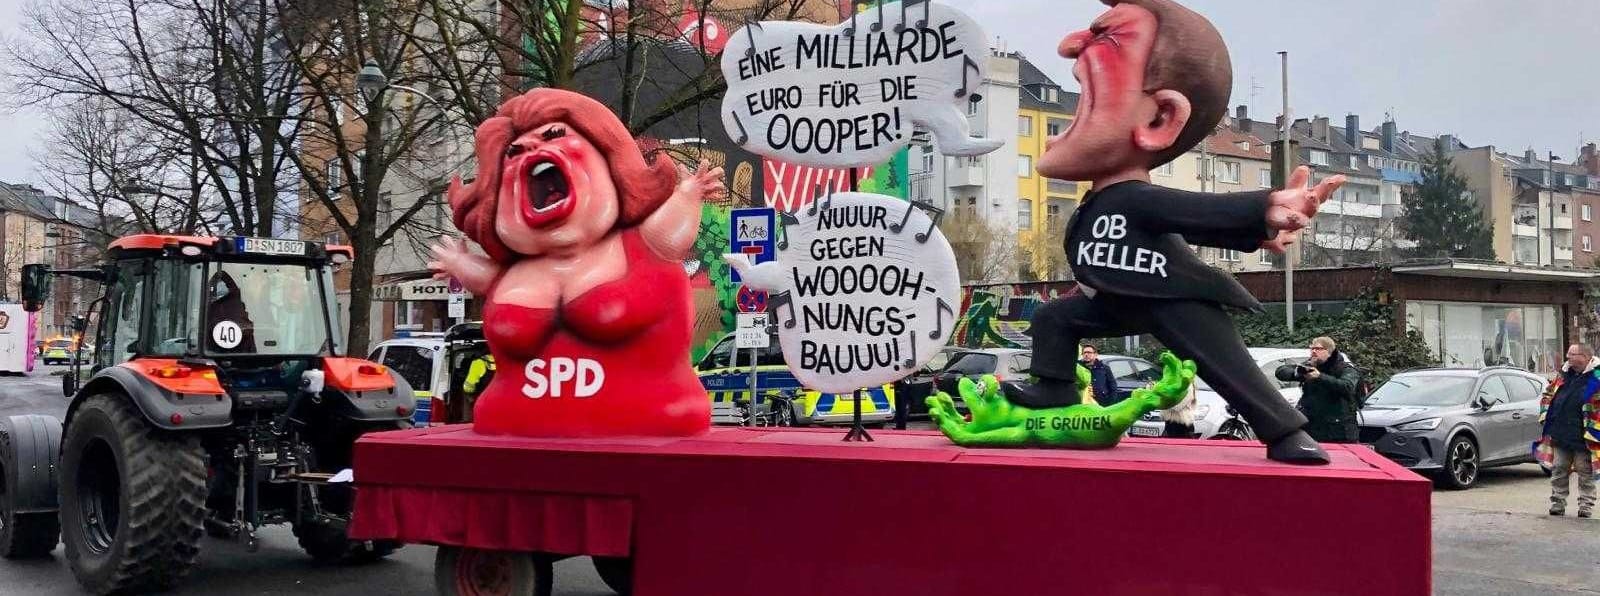 Die Lokalpolitik thematisiert Jacques Tilly auf einem seiner Wagen ebenfalls. Zu sehen ist Oberbürgermeister Stephan Keller (CDU), der für eine teure neue Oper wirbt. Die SPD entgegnet ihm: "Nuuur gegen Woooohnungsbauuu!"